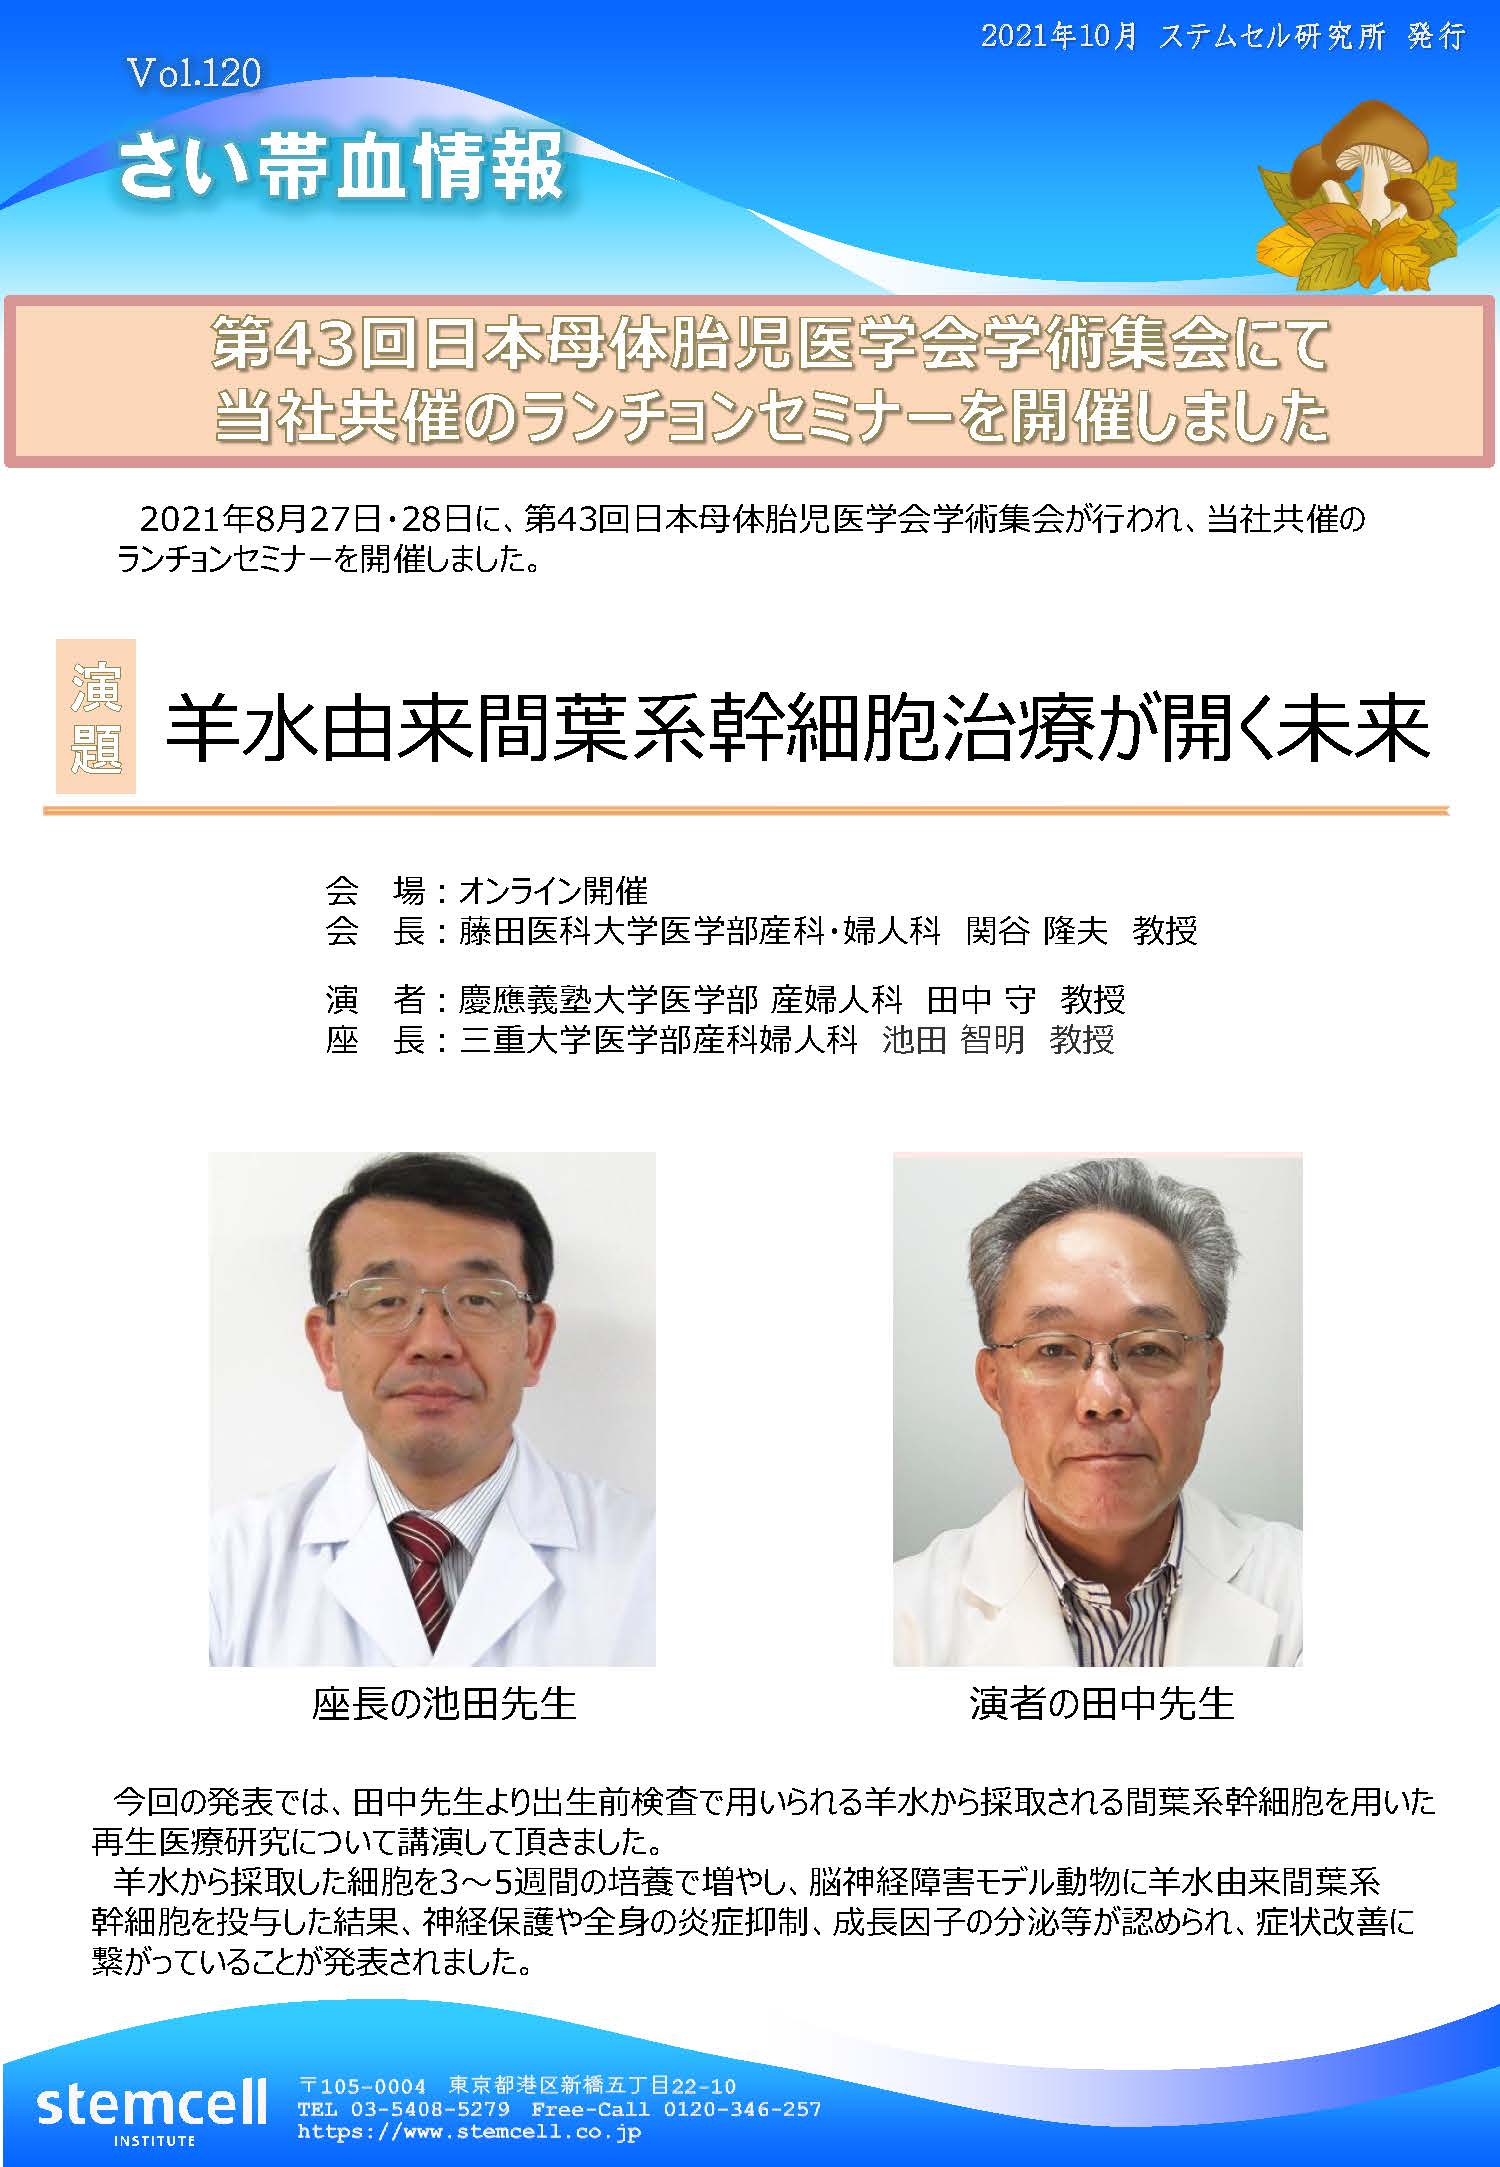 さい帯血情報Vol.120　第43回日本母体胎児医学会学術集会にて当社共催のランチョンセミナーを開催しました